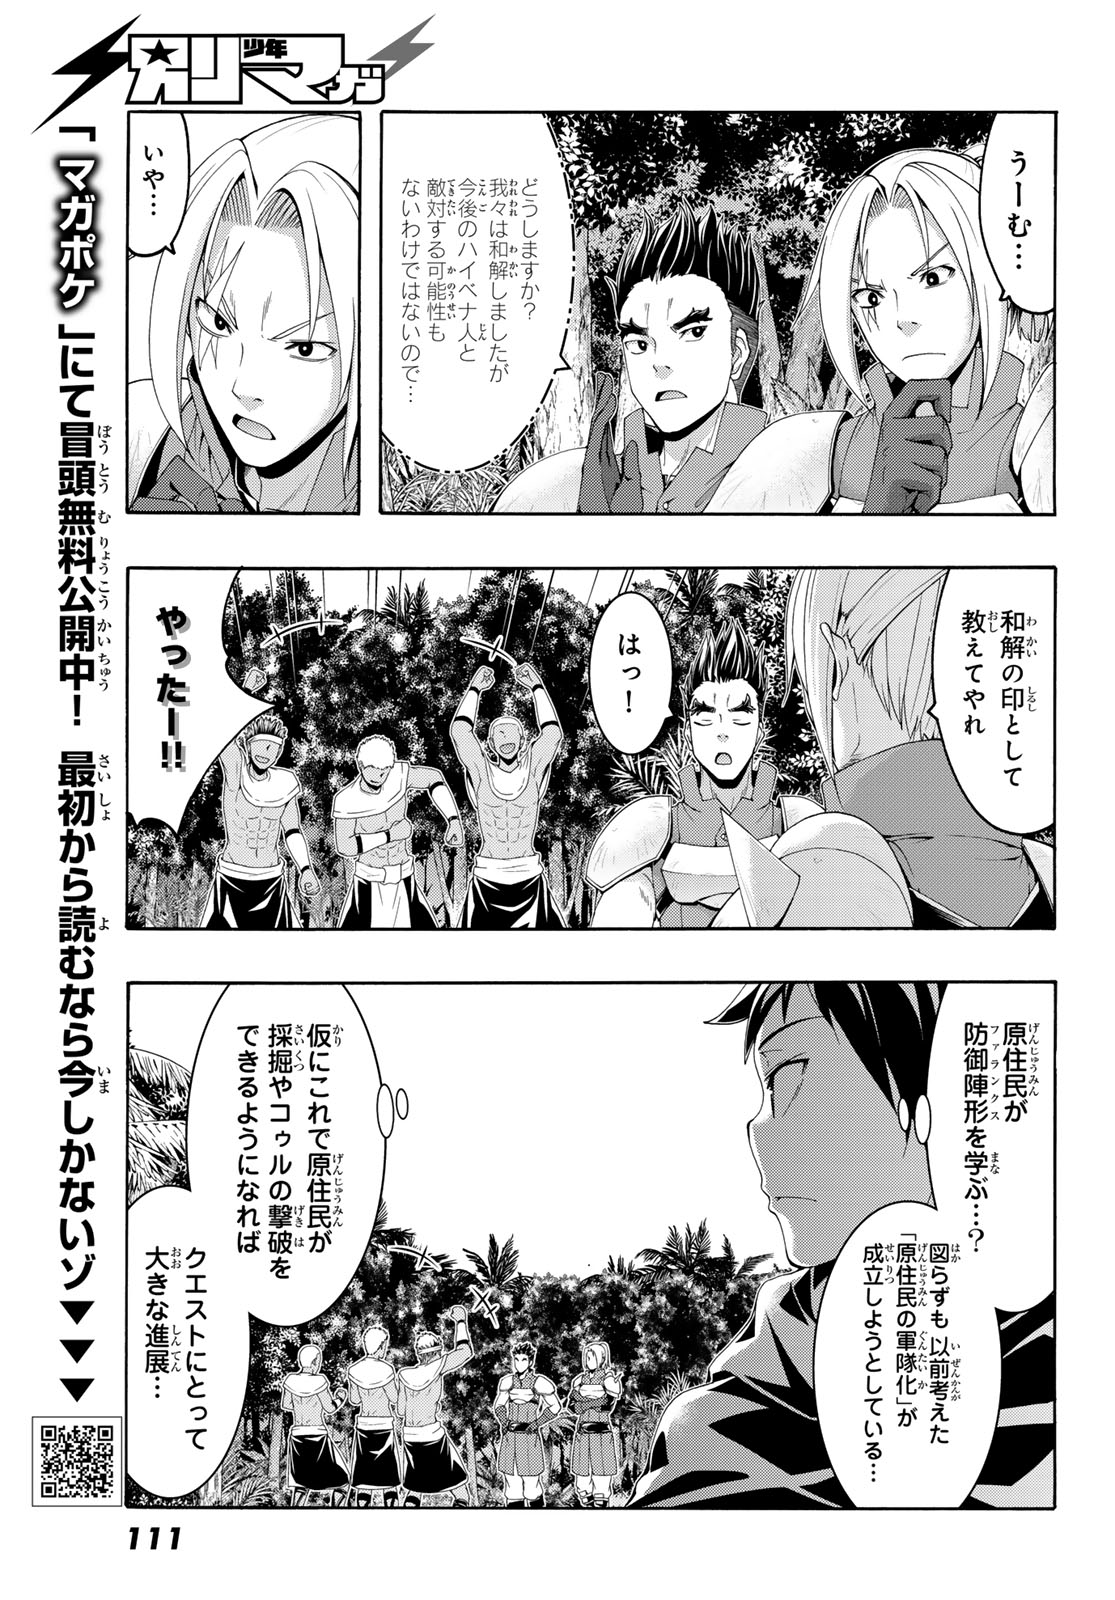 100-man no Inochi no Ue ni Ore wa Tatte Iru - Chapter 97 - Page 3